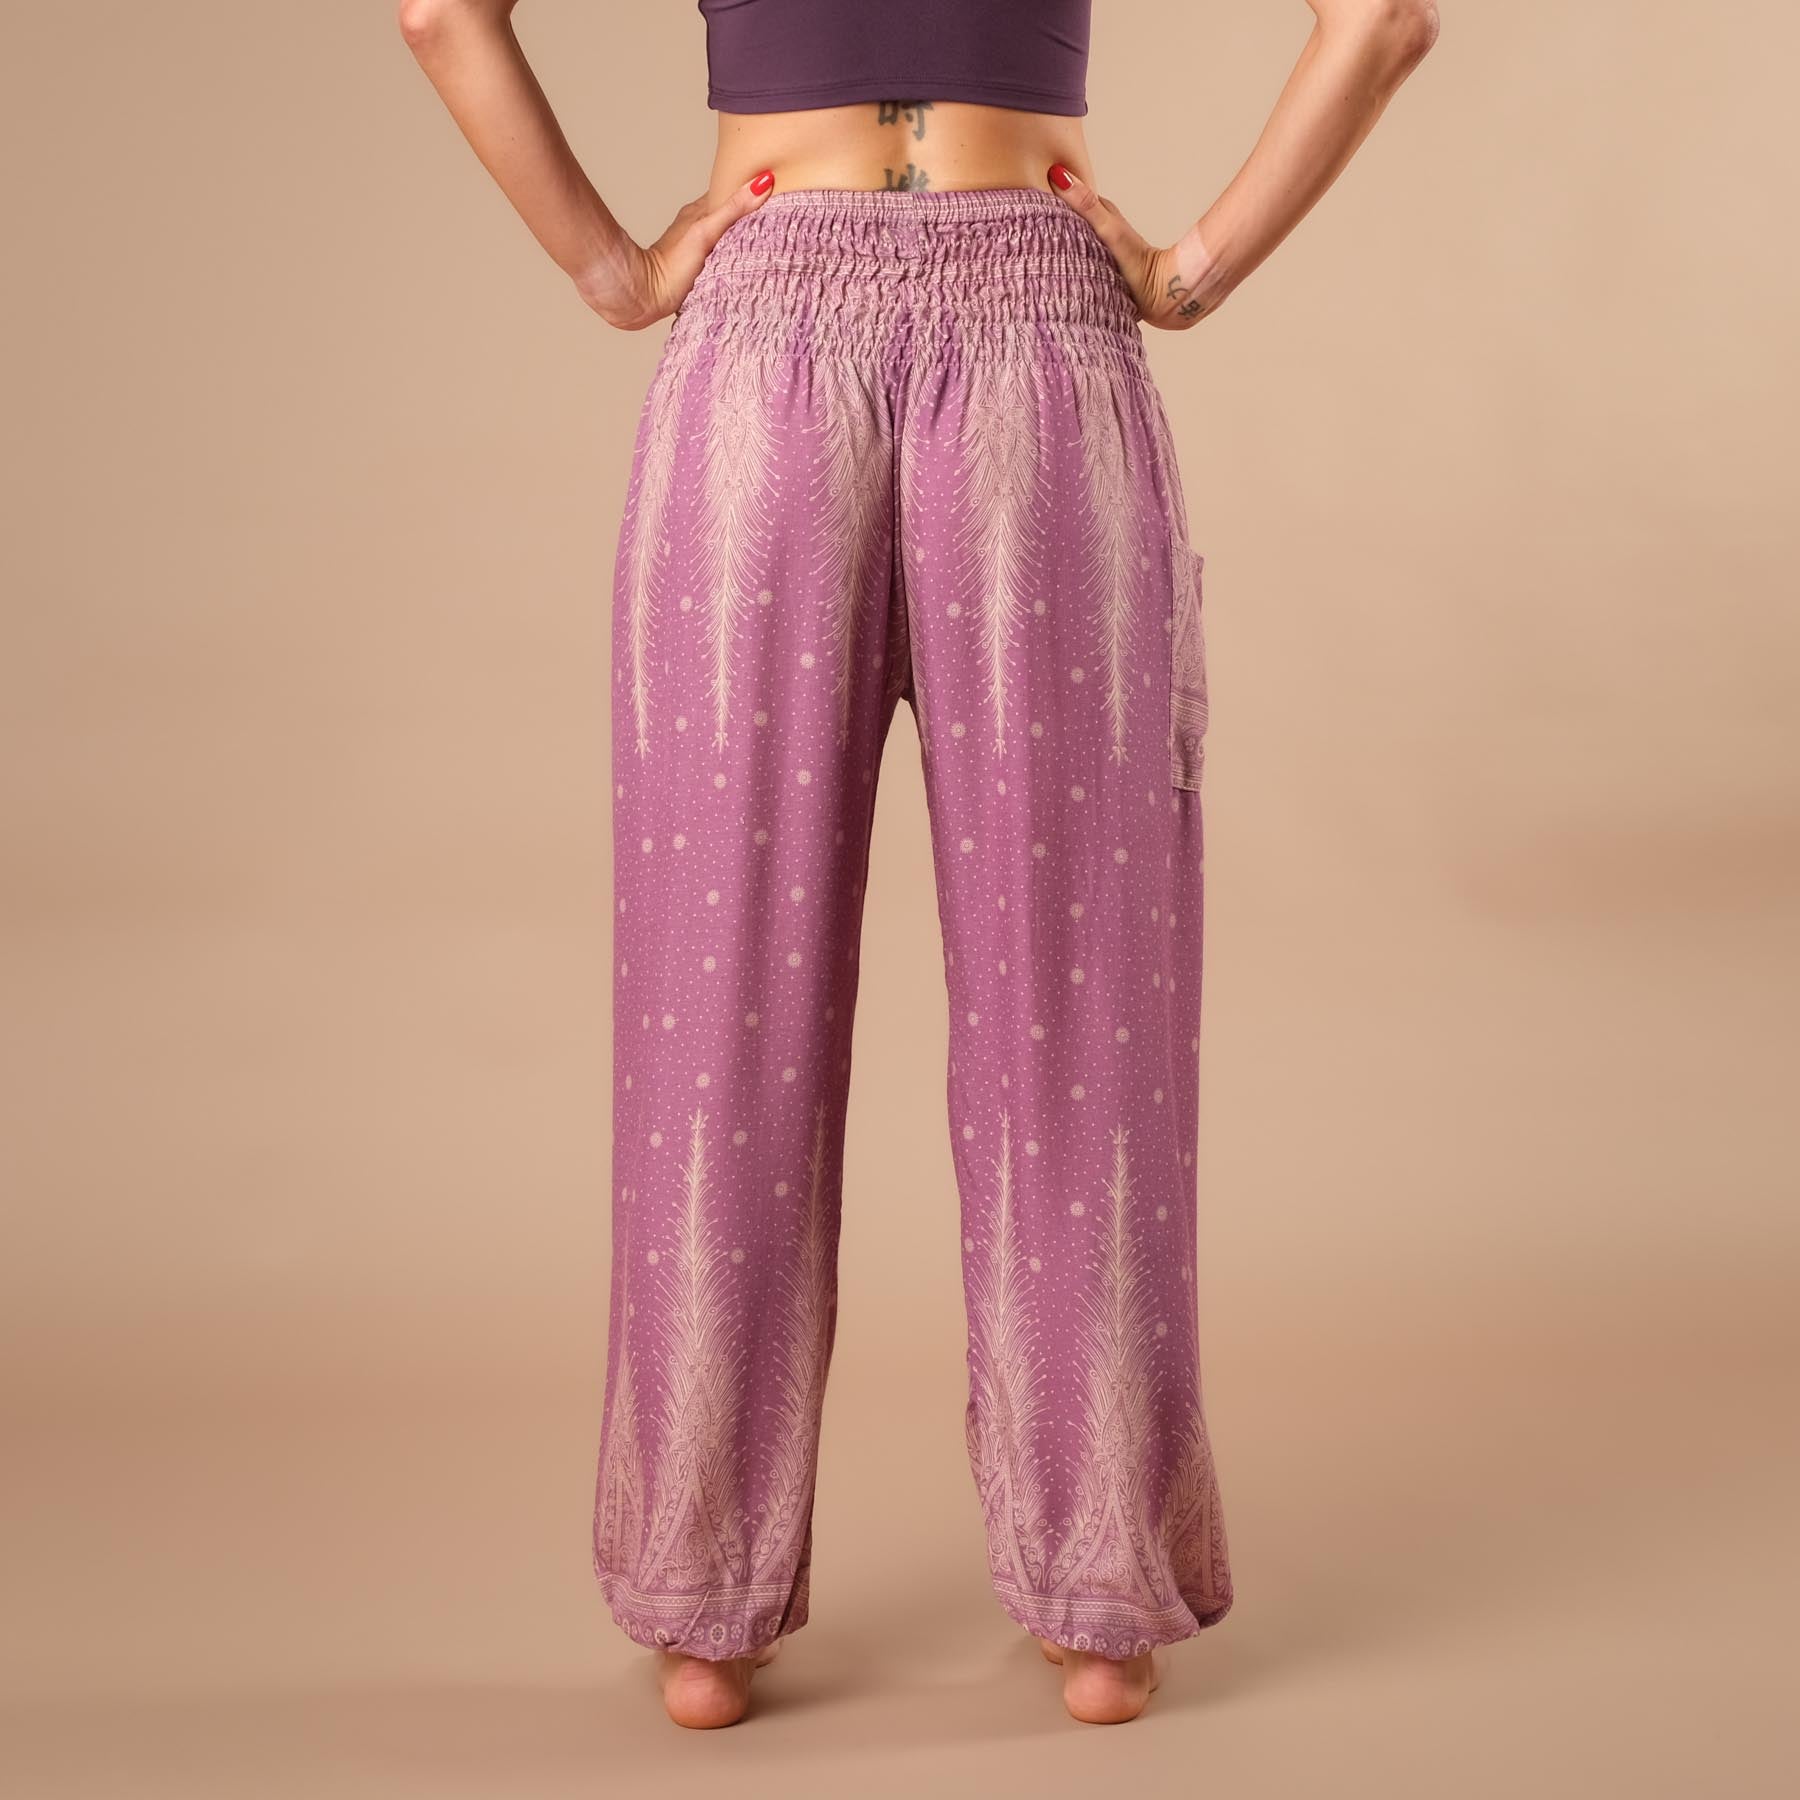 pantalon de harem, sarouel pour le yoga et les loisirs bohème violet